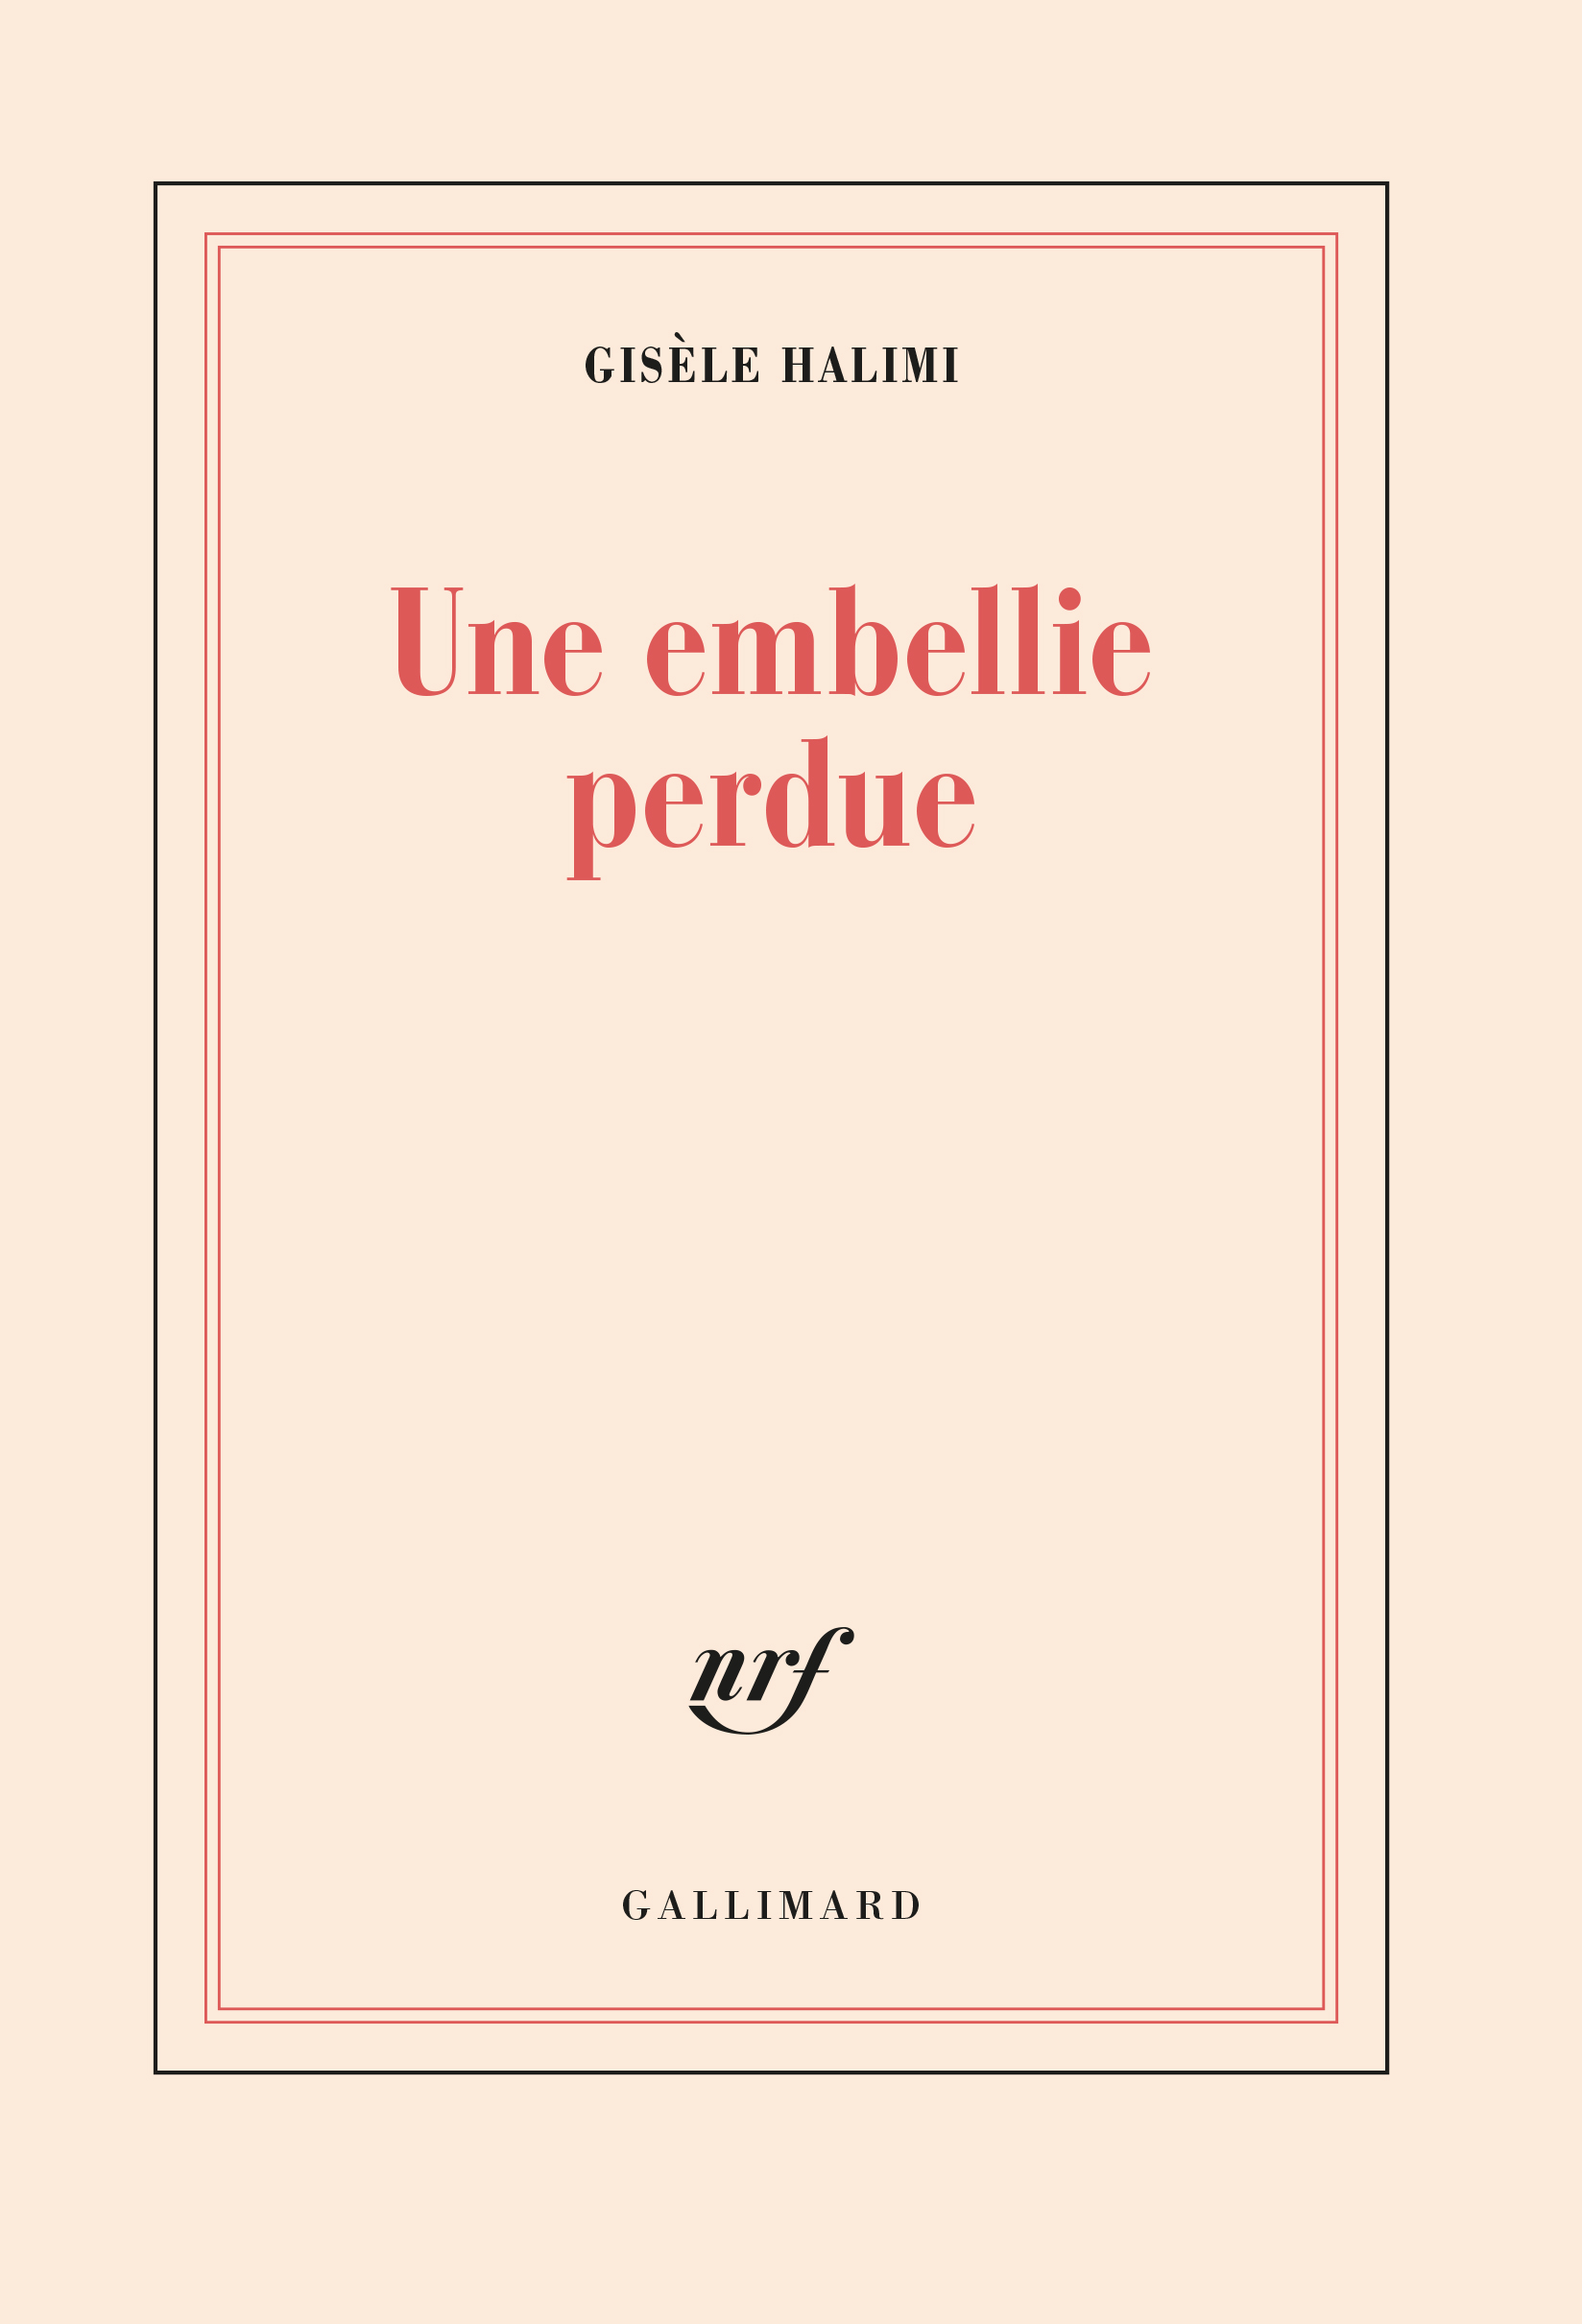 Une embellie perdue - Blanche - GALLIMARD - Site Gallimard